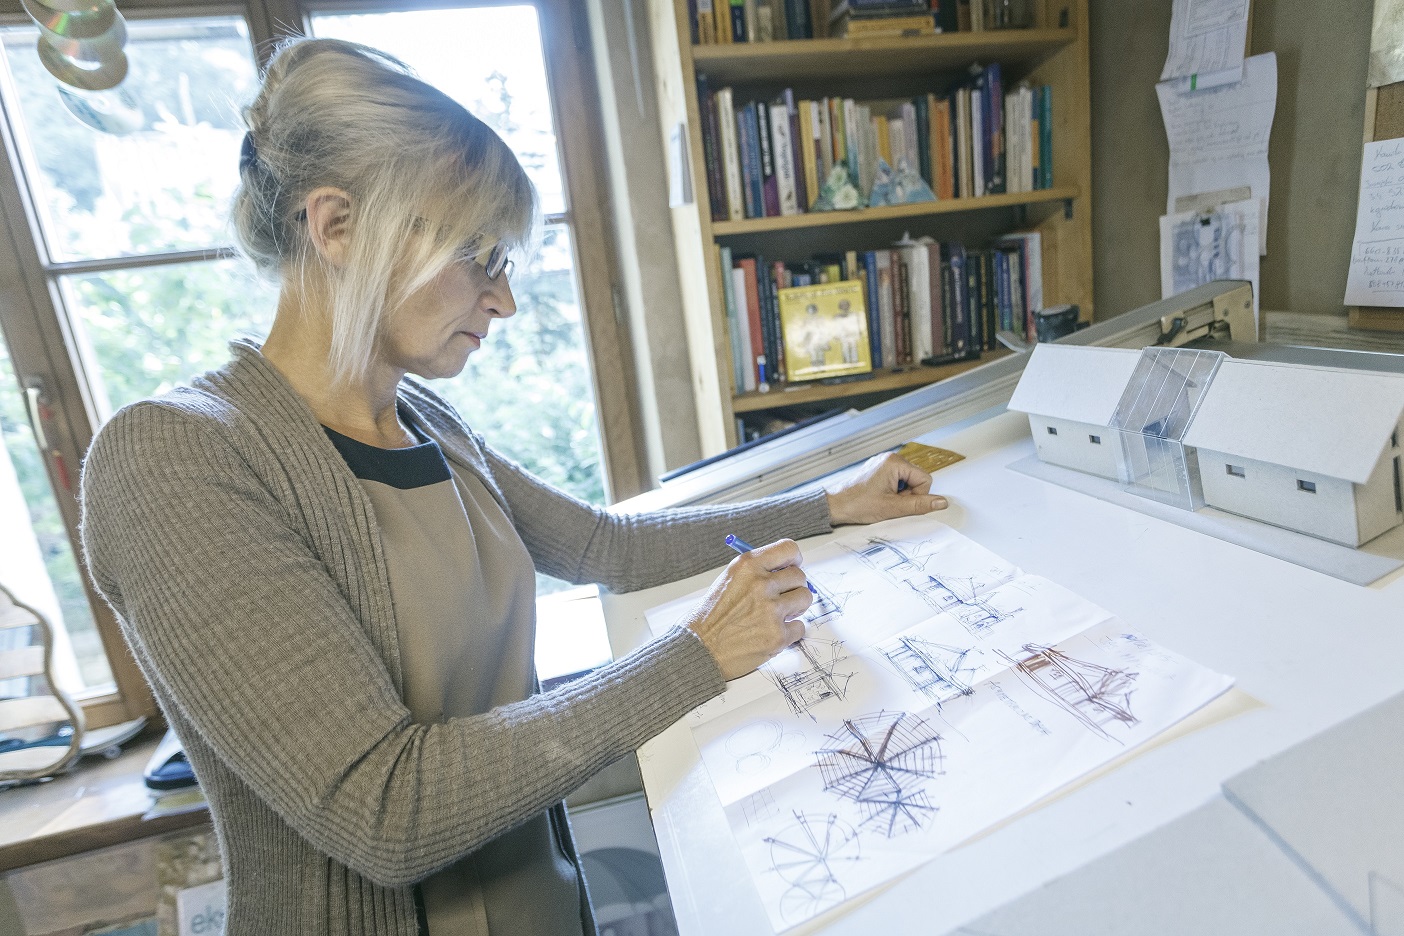 Dojrzała kobieta rysuje przy desce kreślarskiej